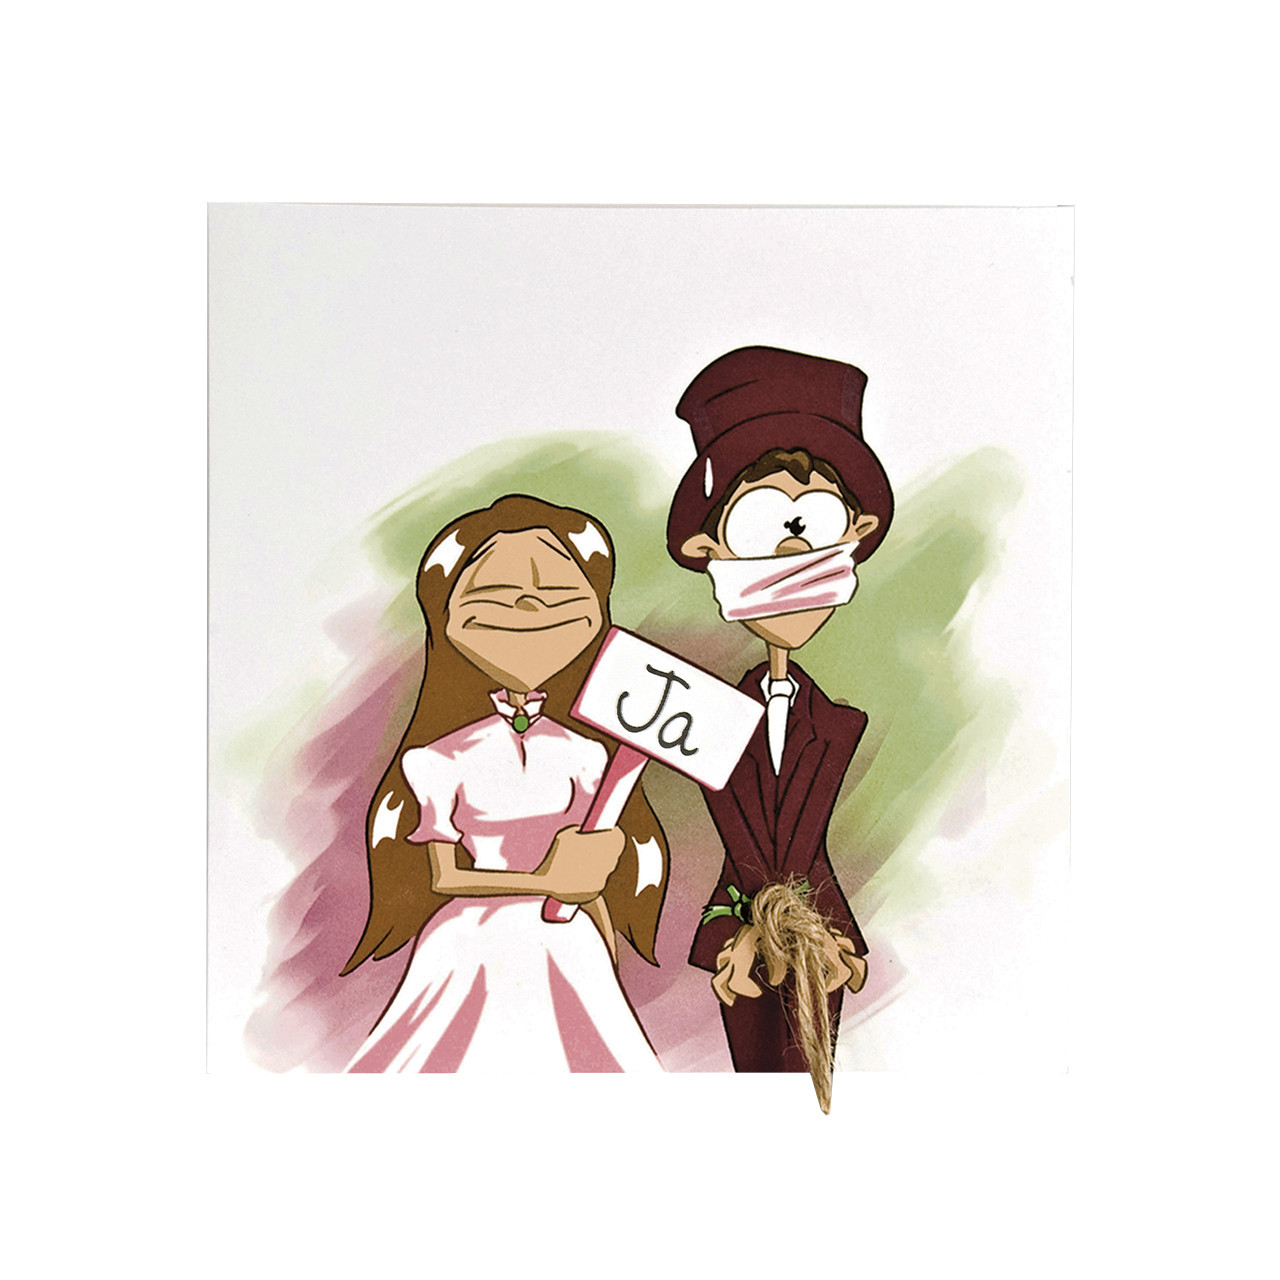 Hochzeit Comic Lustig
 Hochzeitskarte ic lustig Braut sagt ja Bräutigam erst